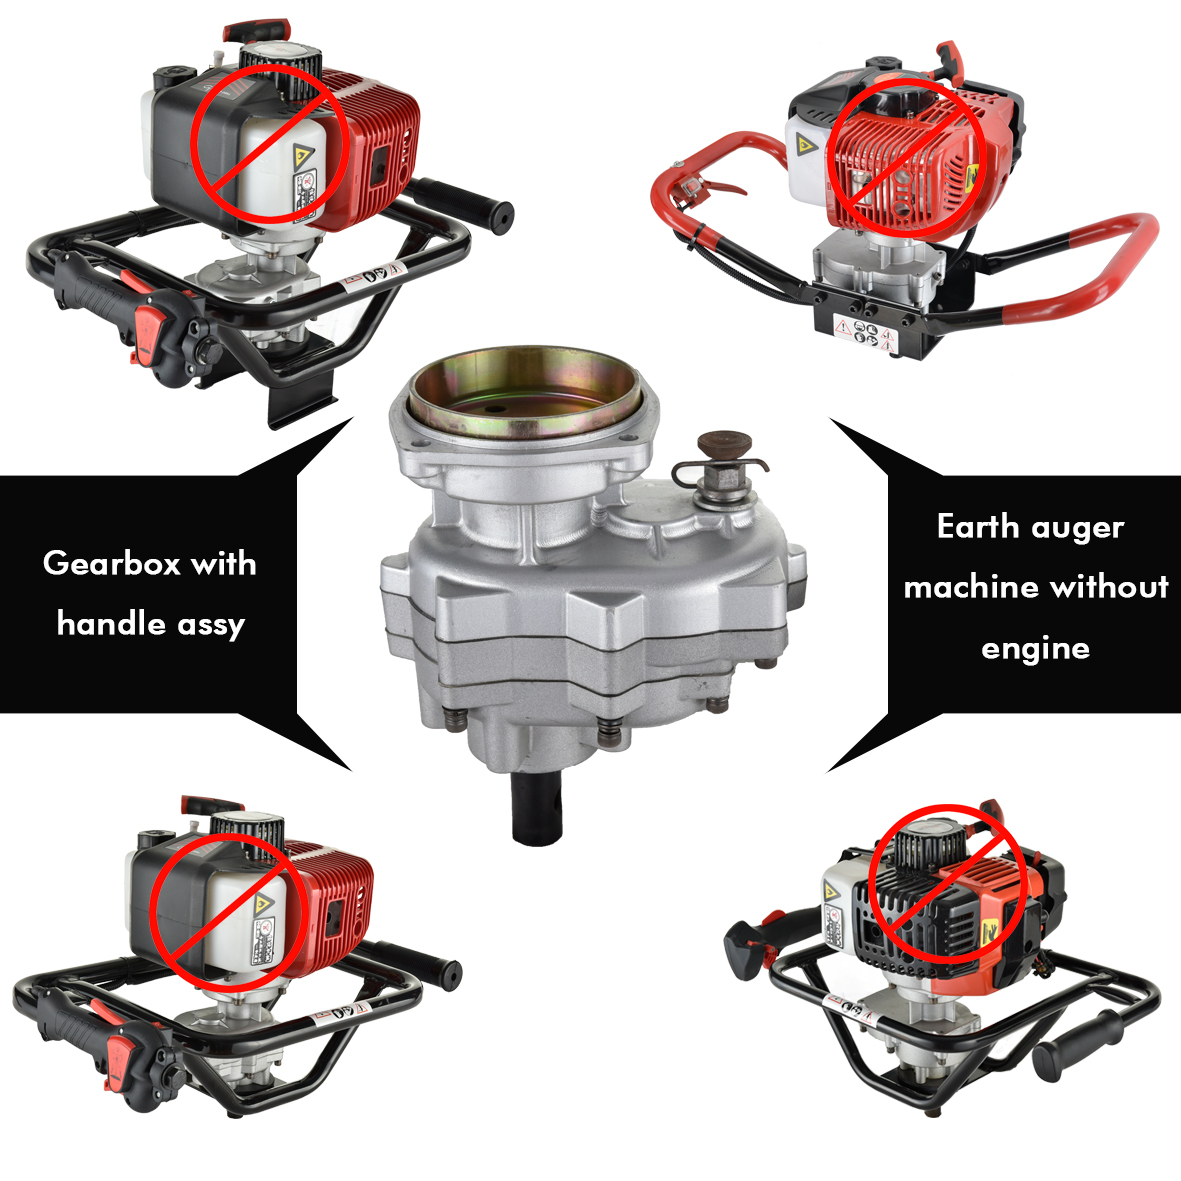 Manual Reverse Gear Box untuk Mesin Bensin Kecil 4 Atau 2 Tak Power Earth Auger Machine